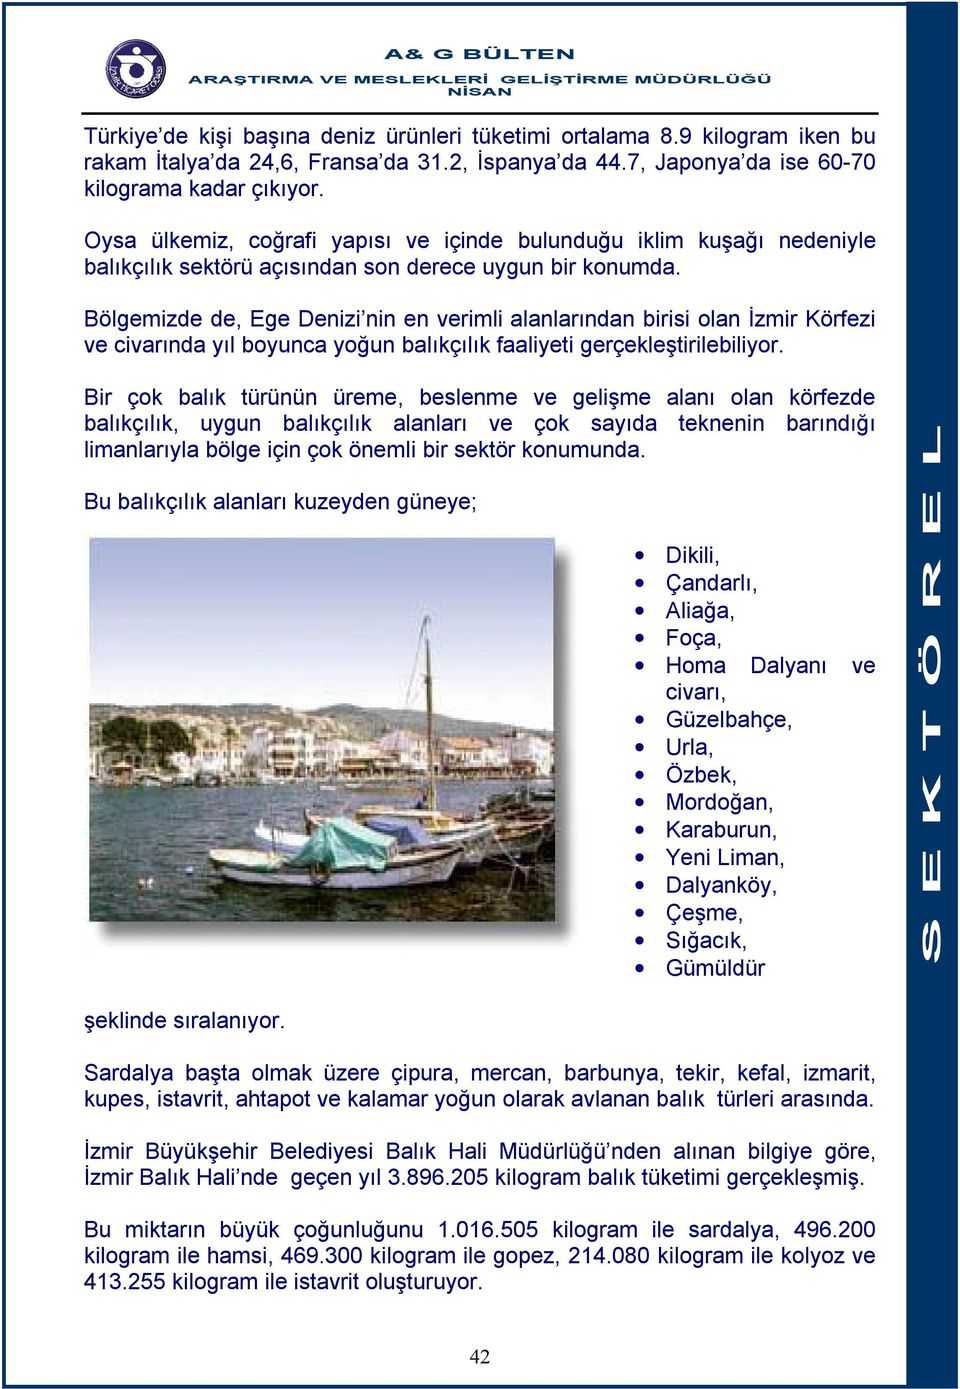 Bölgemizde de, Ege Denizi nin en verimli alanlarından birisi olan İzmir Körfezi ve civarında yıl boyunca yoğun balıkçılık faaliyeti gerçekleştirilebiliyor.